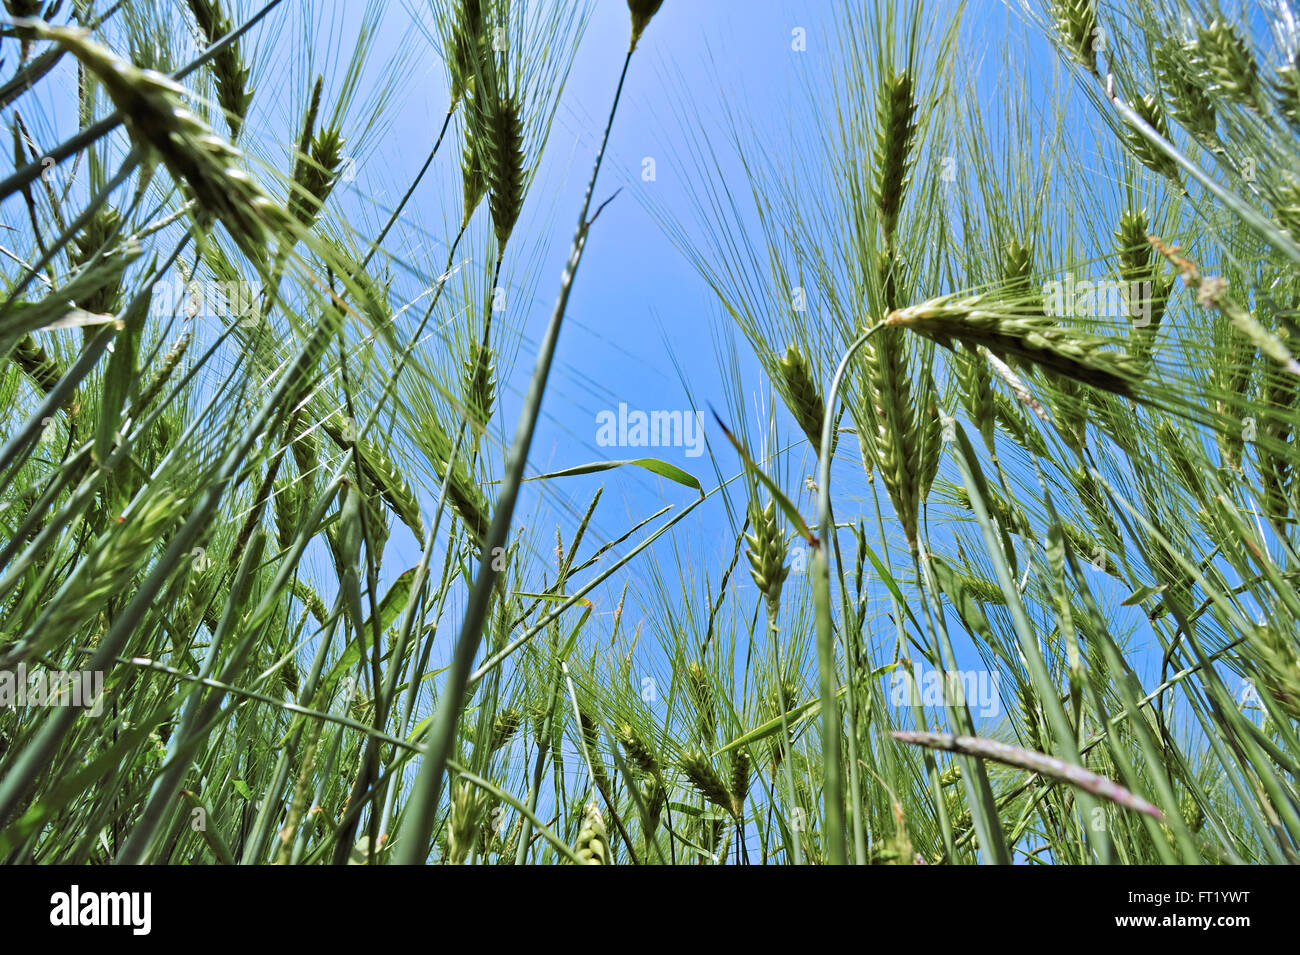 Worm's-eye view on barley ears (Hordeum vulgare) in field in spring Stock Photo